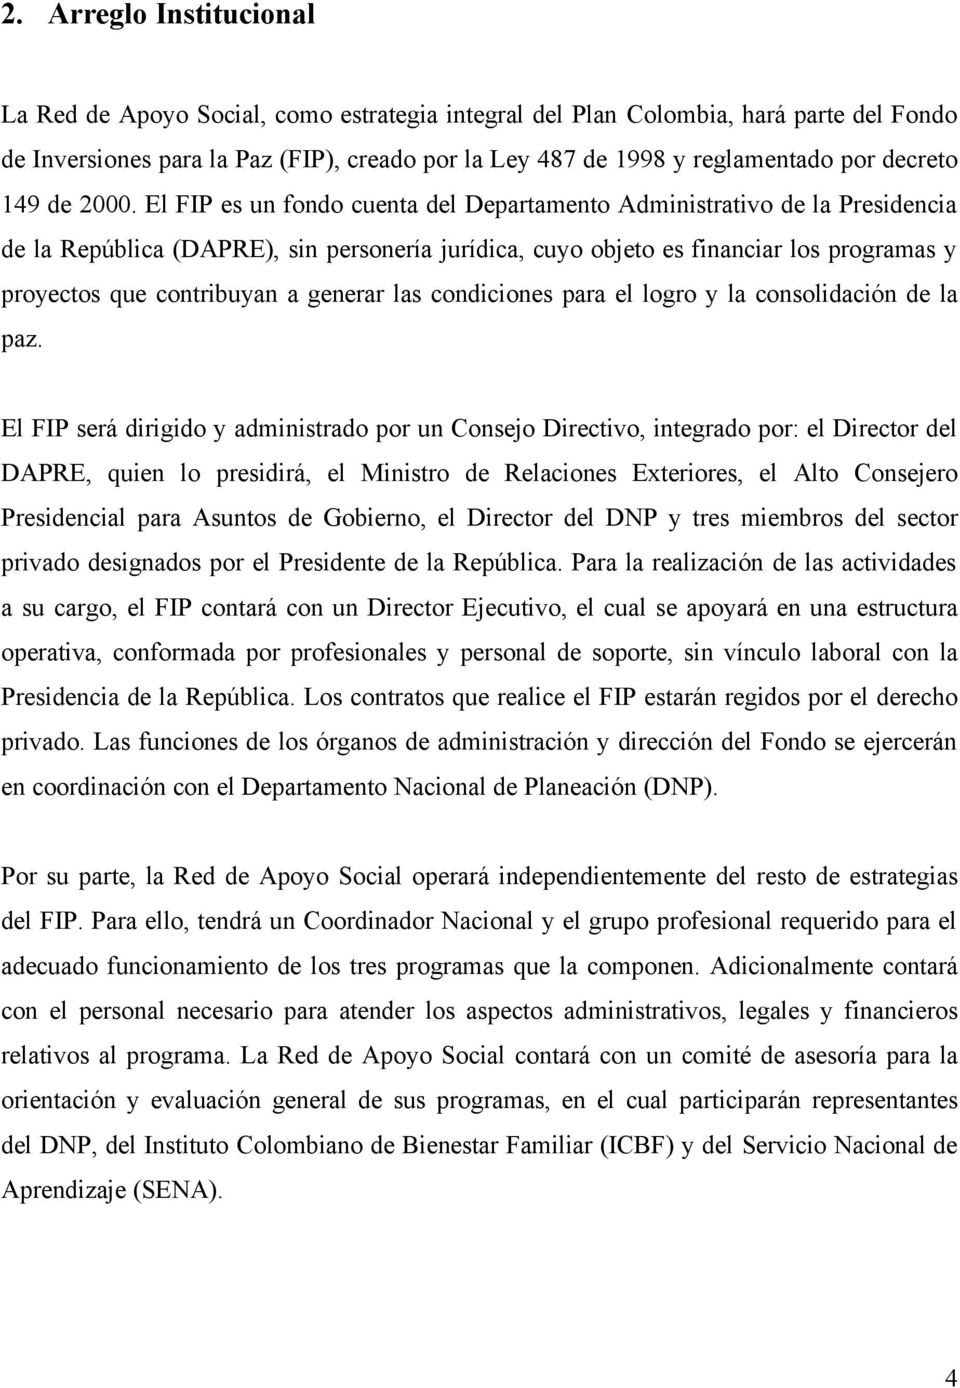 El FIP es un fondo cuenta del Departamento Administrativo de la Presidencia de la República (DAPRE), sin personería jurídica, cuyo objeto es financiar los programas y proyectos que contribuyan a